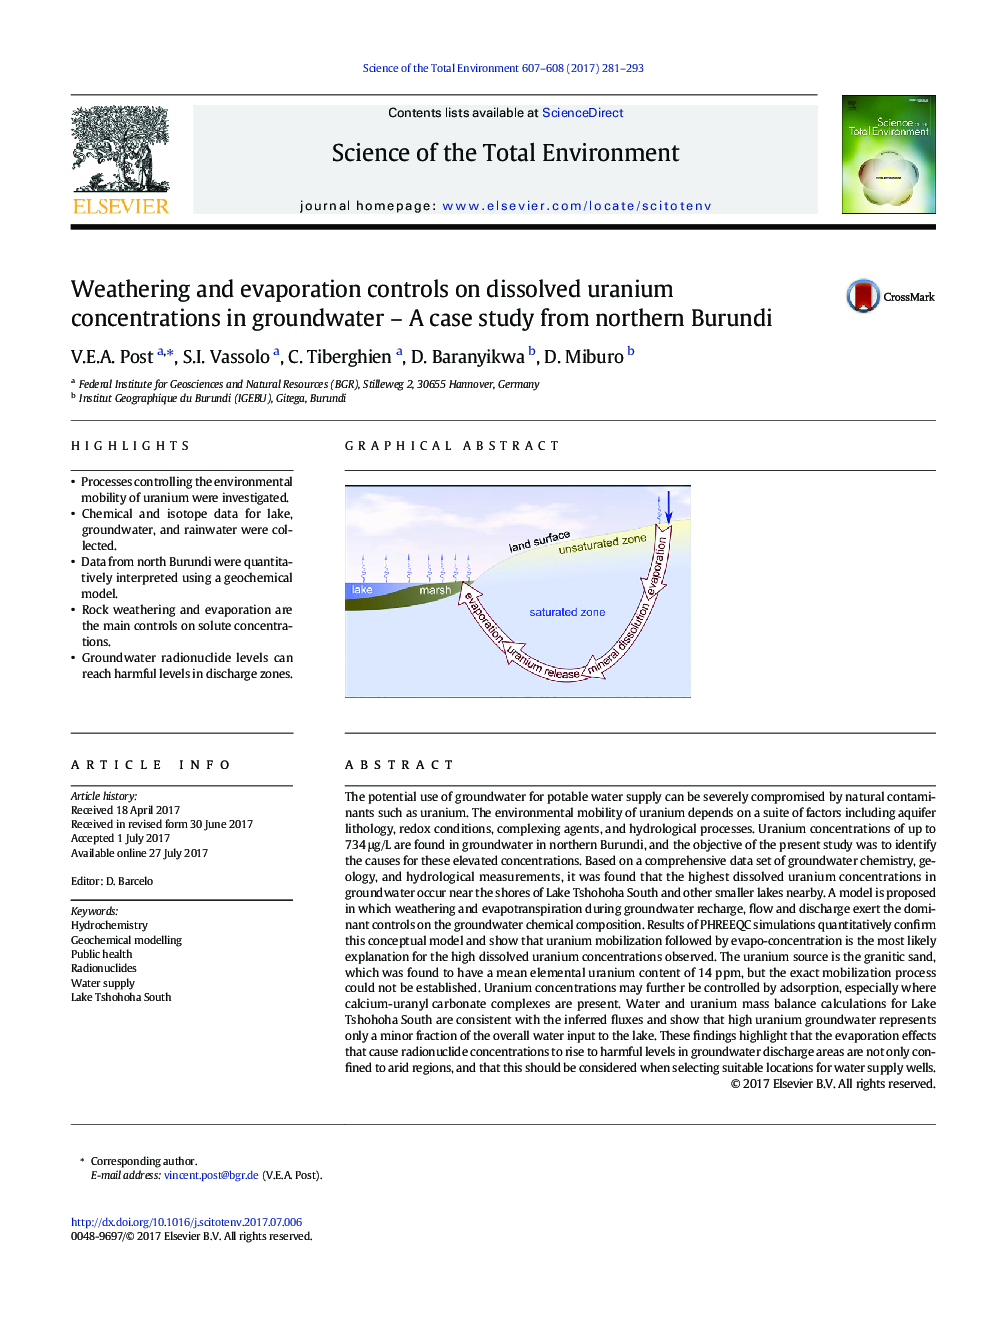 کنترل آب و هوای و کنترل تبخیر بر روی غلظت اورانیم حل شده در آب های زیرزمینی - یک مطالعه موردی از شمال بروندی 